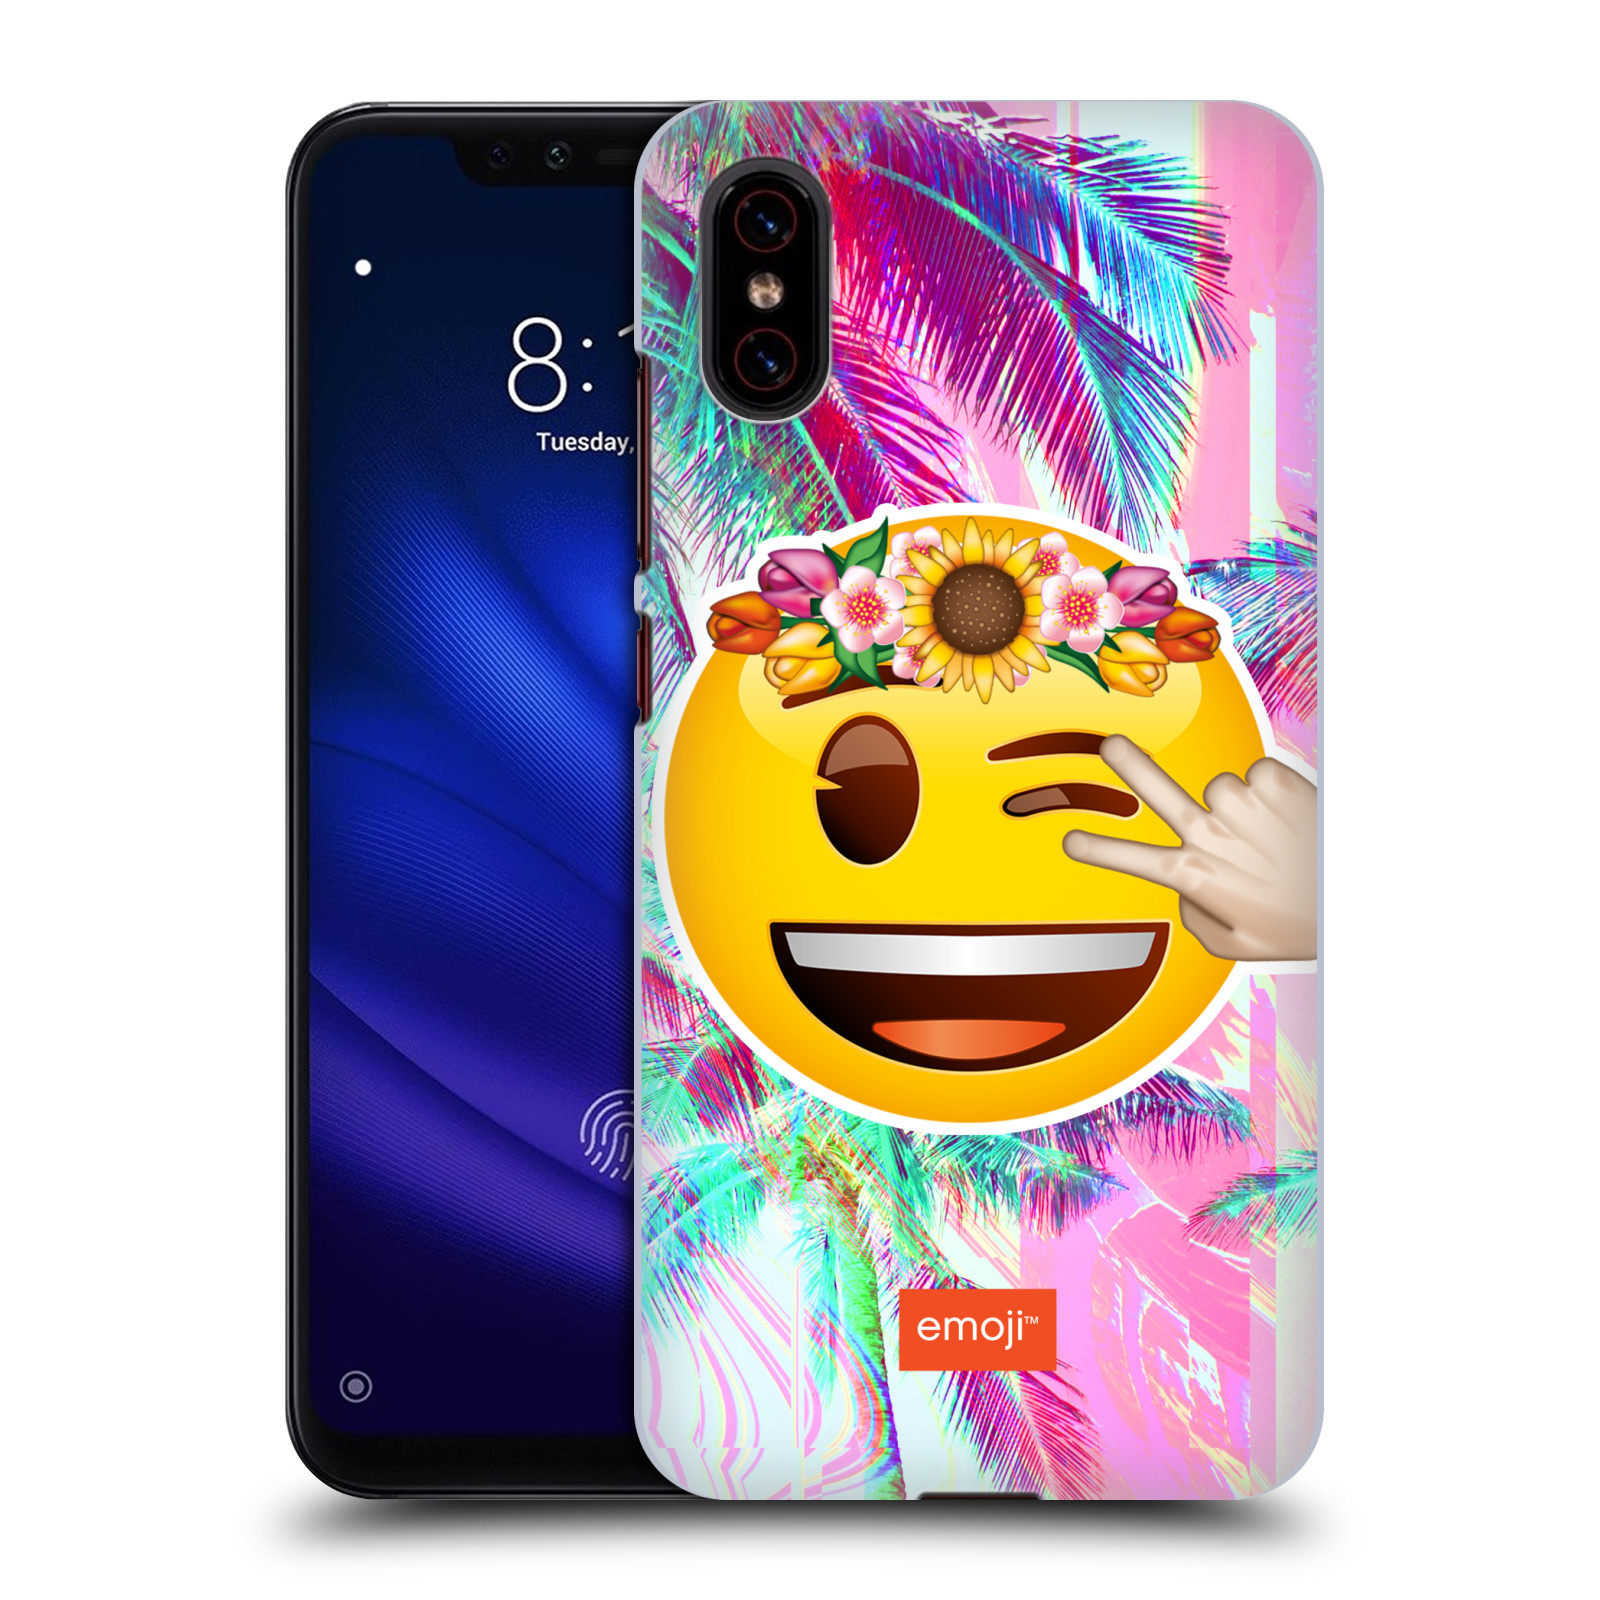 Pouzdro na mobil Xiaomi  Mi 8 PRO - HEAD CASE - Emoji smajlík palmy a květiny